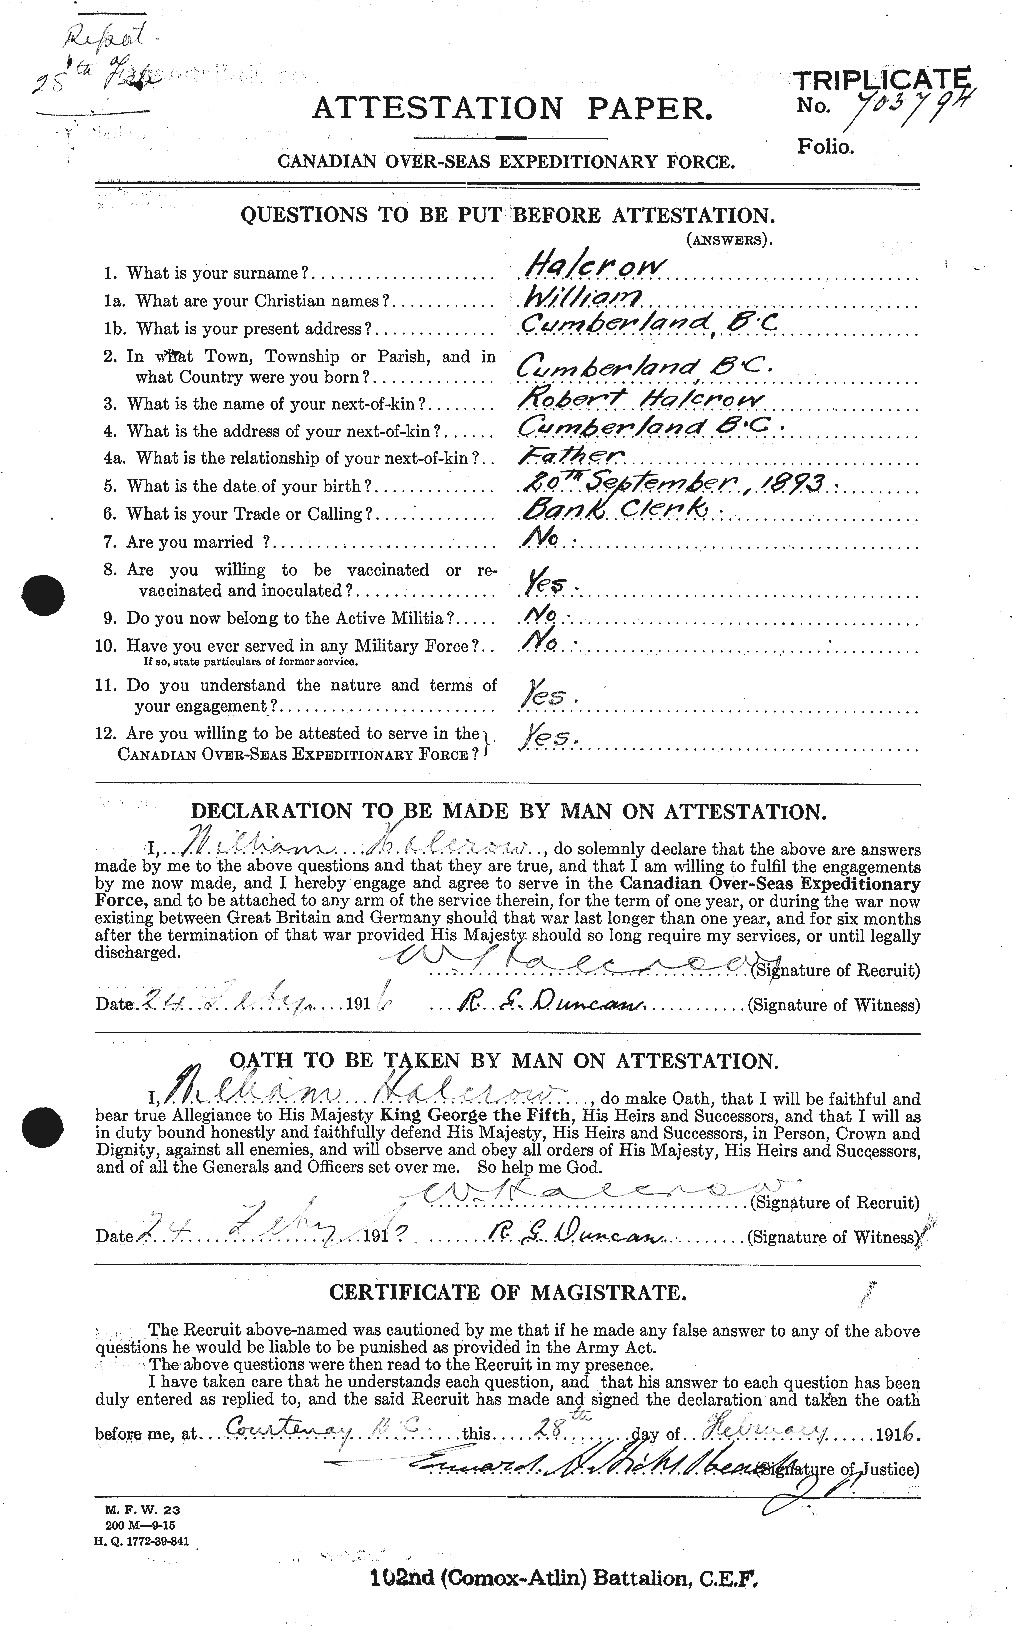 Dossiers du Personnel de la Première Guerre mondiale - CEC 370305a